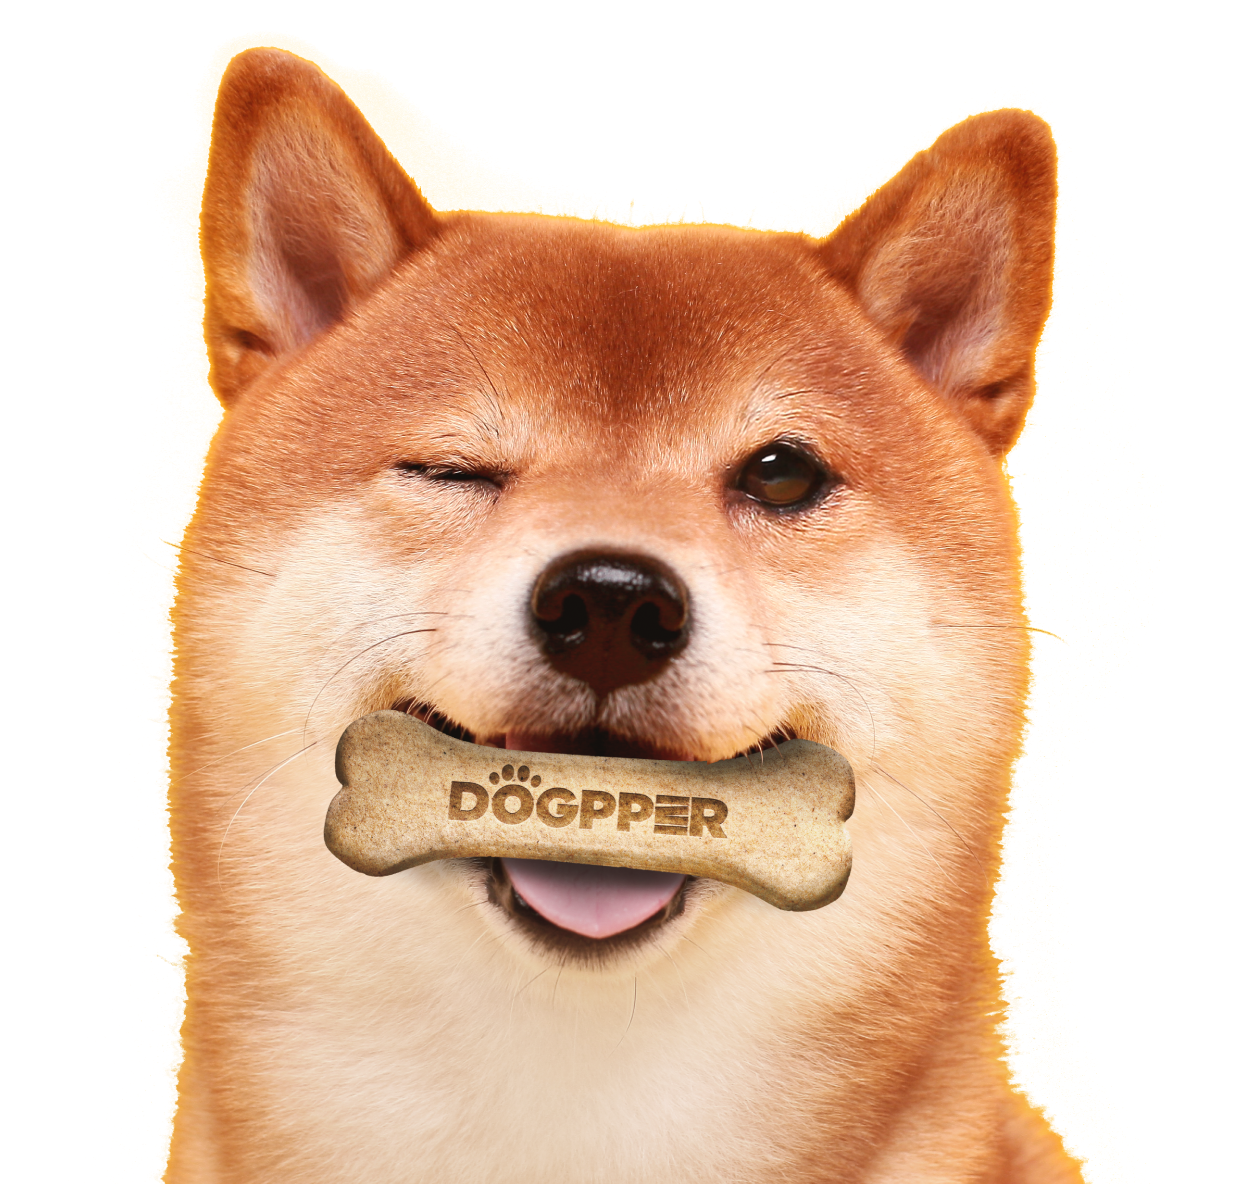 Cachoro Shiba com um Dogpper na boca